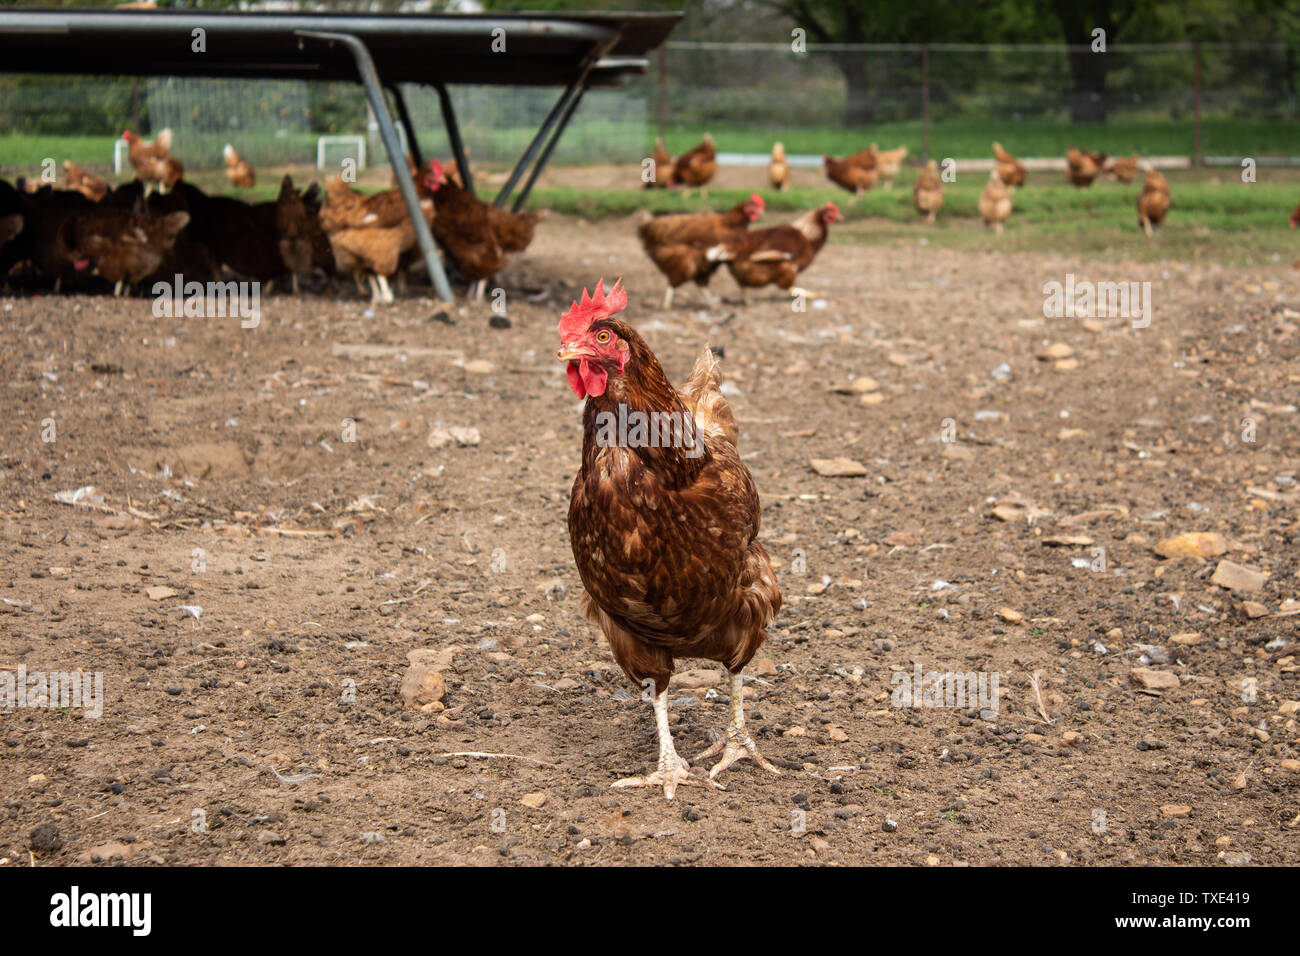 Free Range Isa Brown granja avícola mostrando gallina rascarse en tierra con muchos pollos en segundo plano. Foto de stock